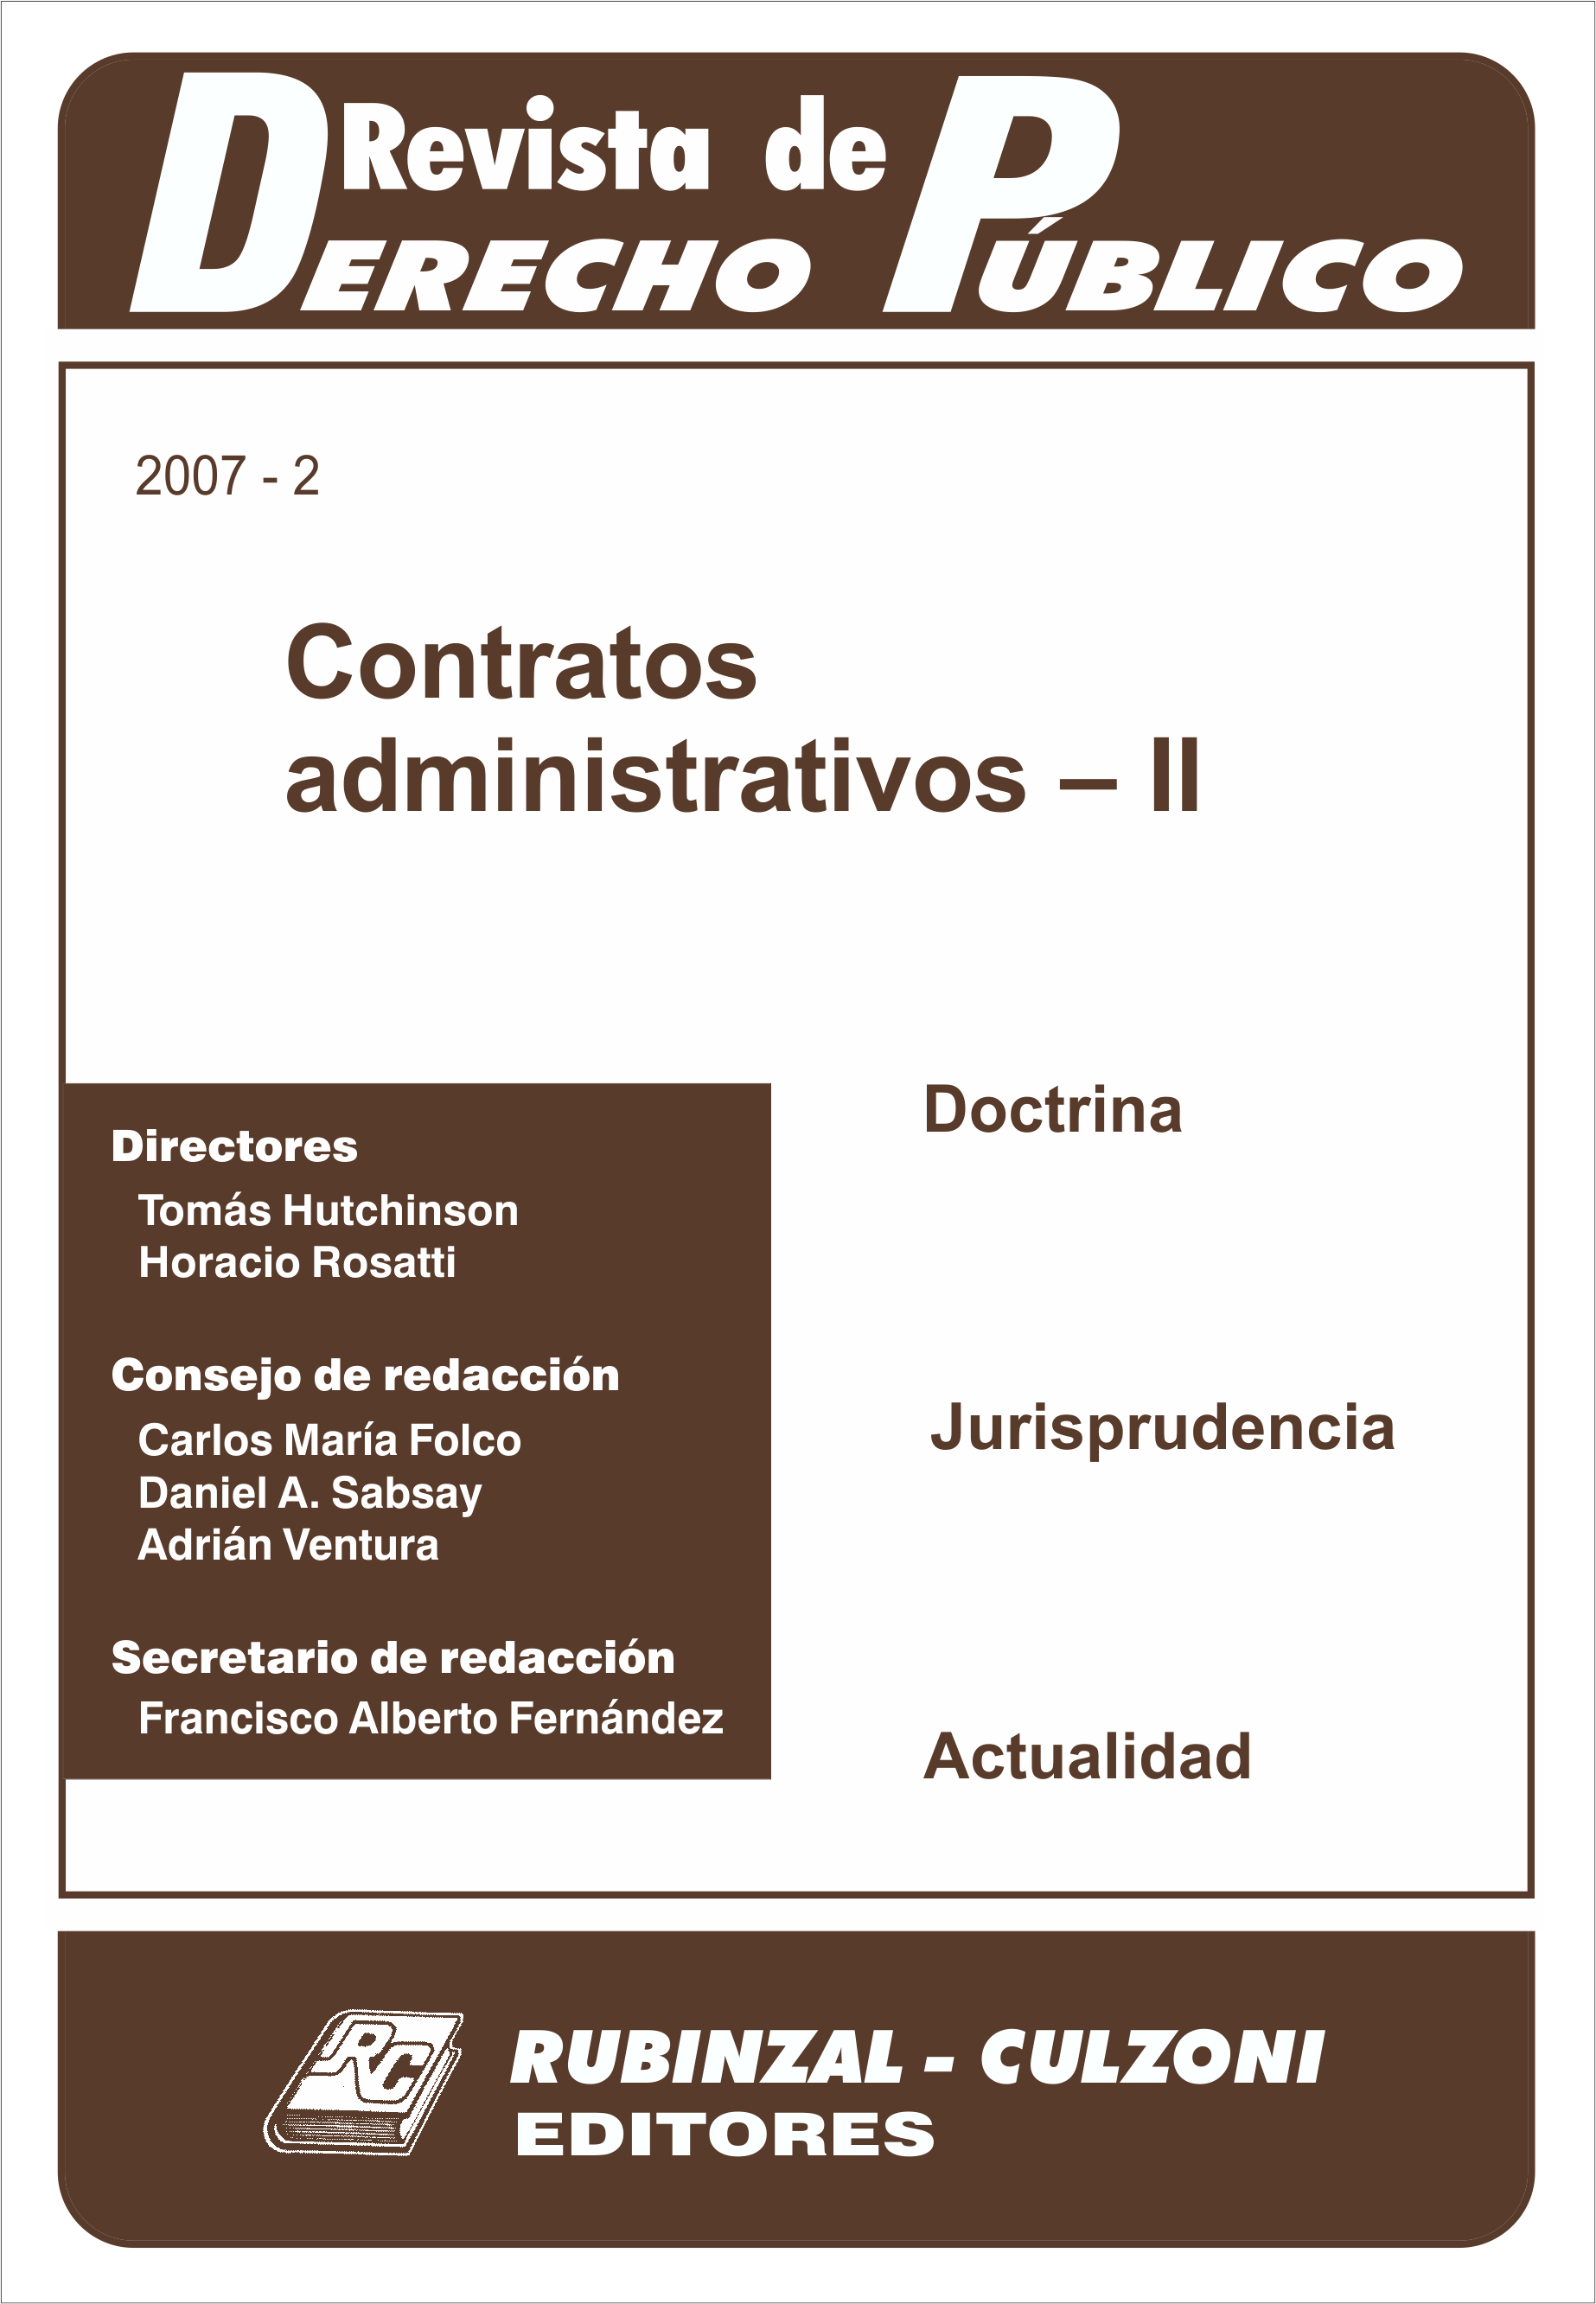 Revista de Derecho Público - Contratos administrativos - II.